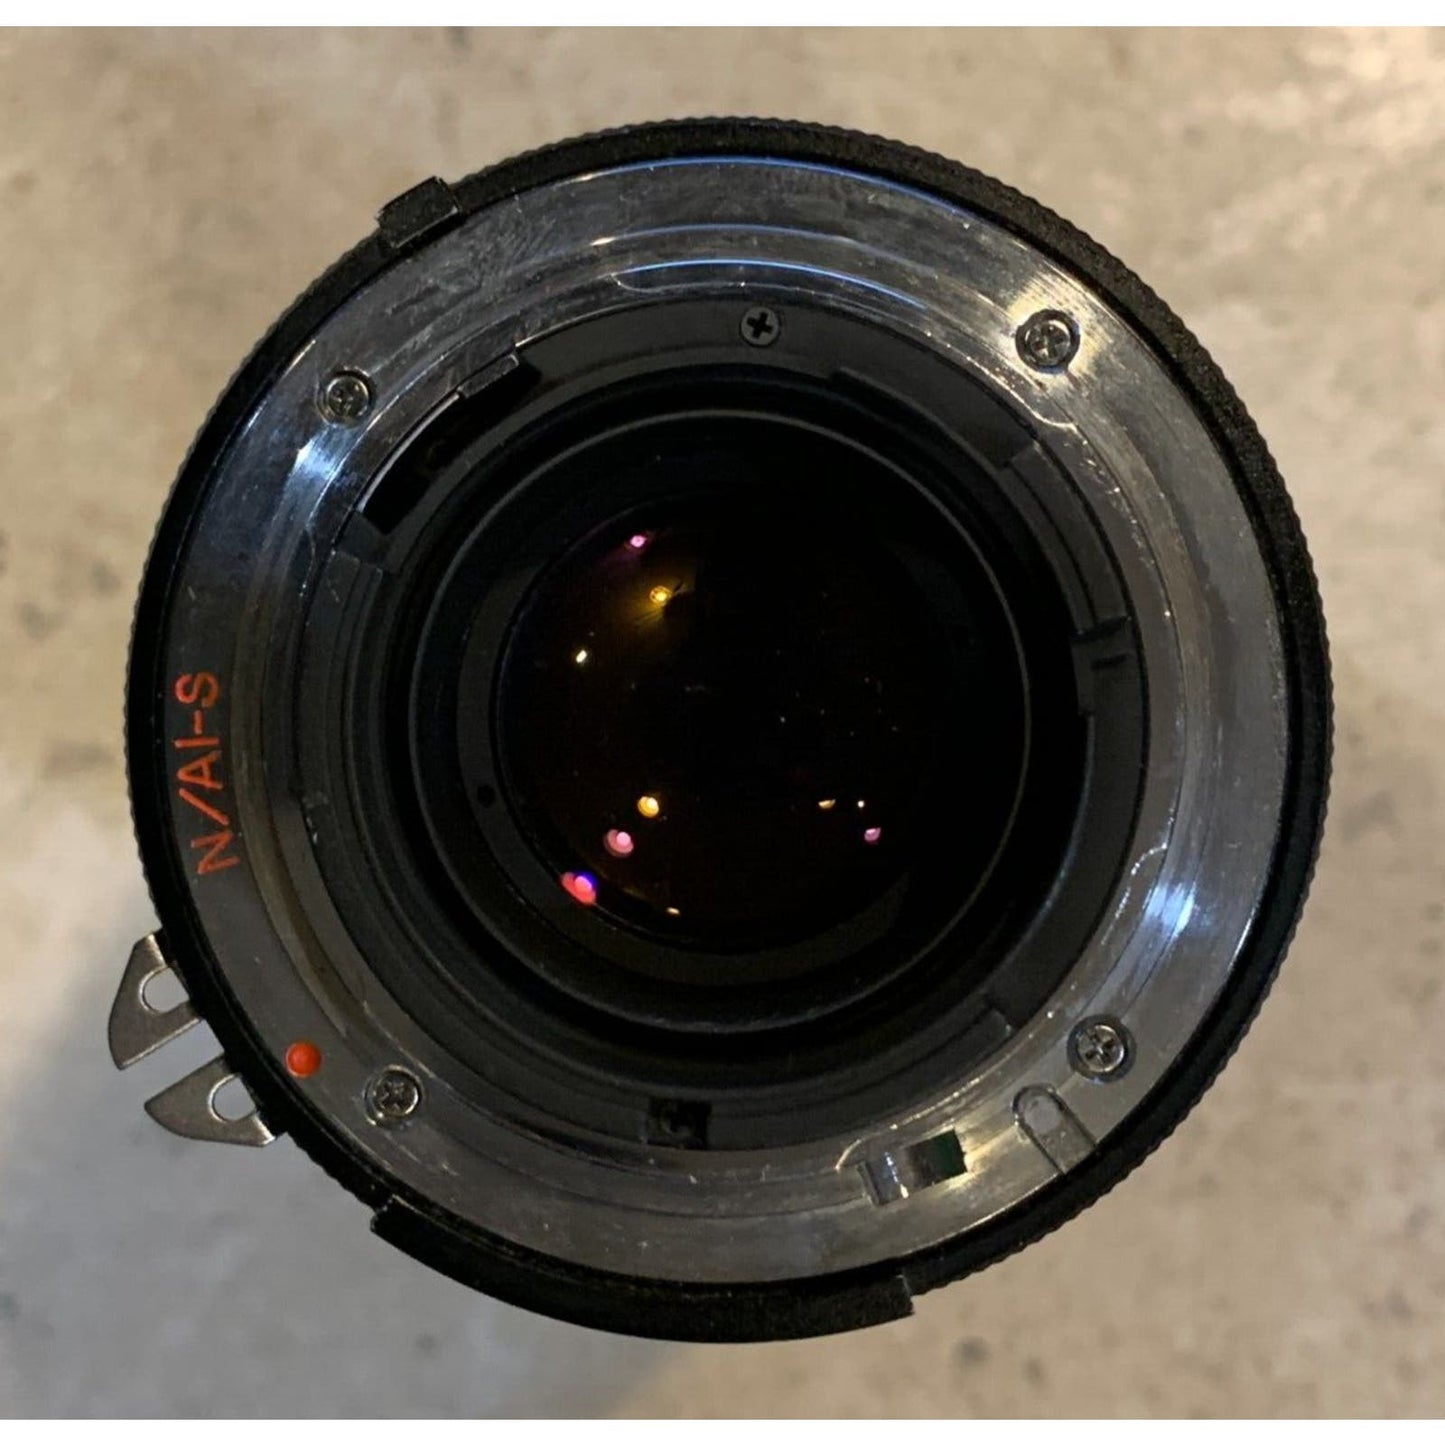 Vivitar 35-200mm 1:3.0-4.5 MC Macro Focusing Zoom Lens